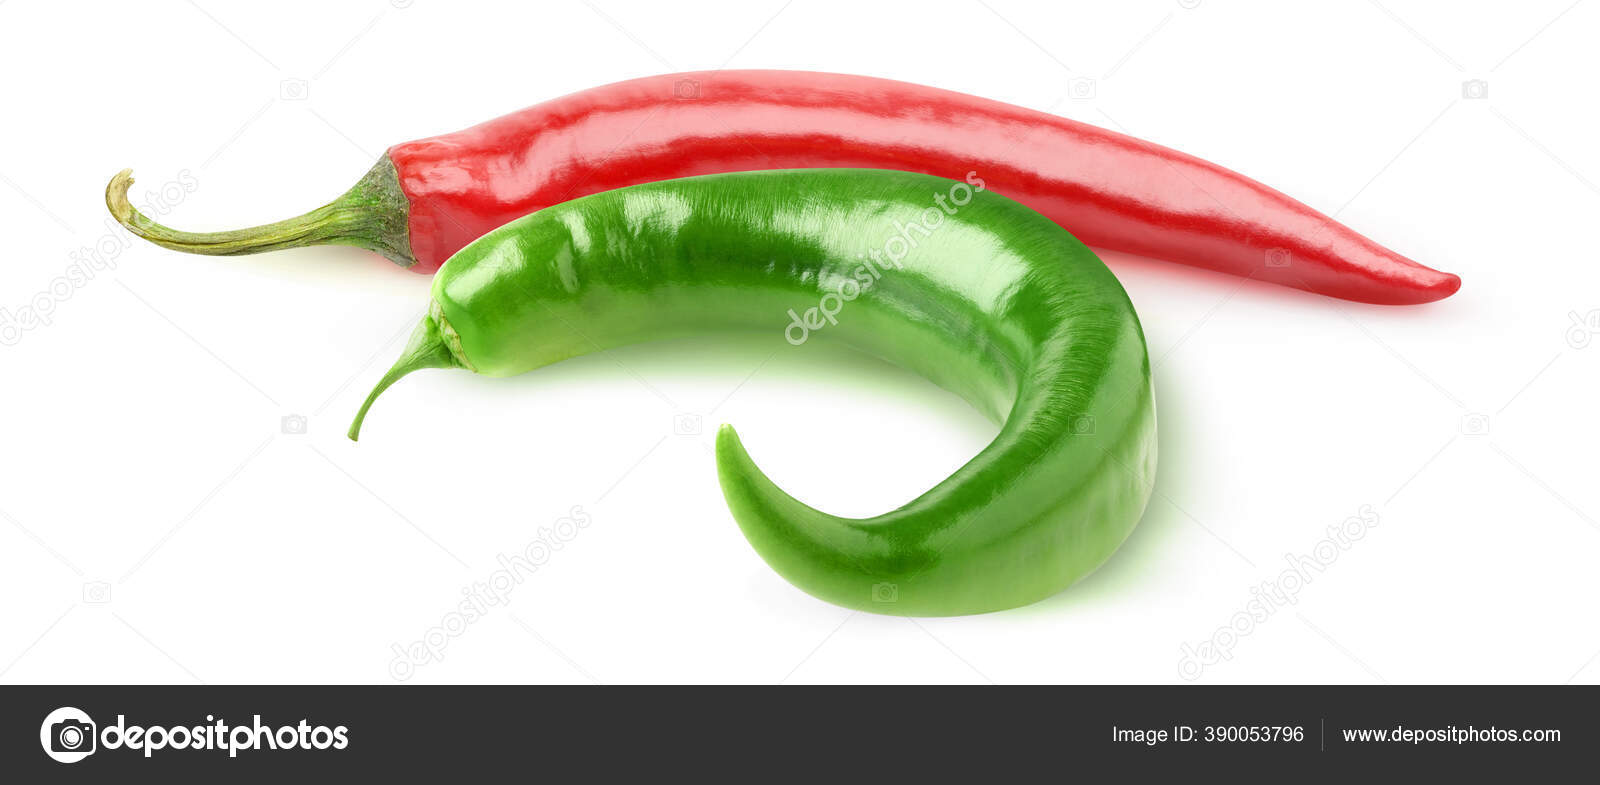 隔離された唐辛子 白を基調とした曲線状の赤唐辛子と緑唐辛子 ストック写真 C Photomaru